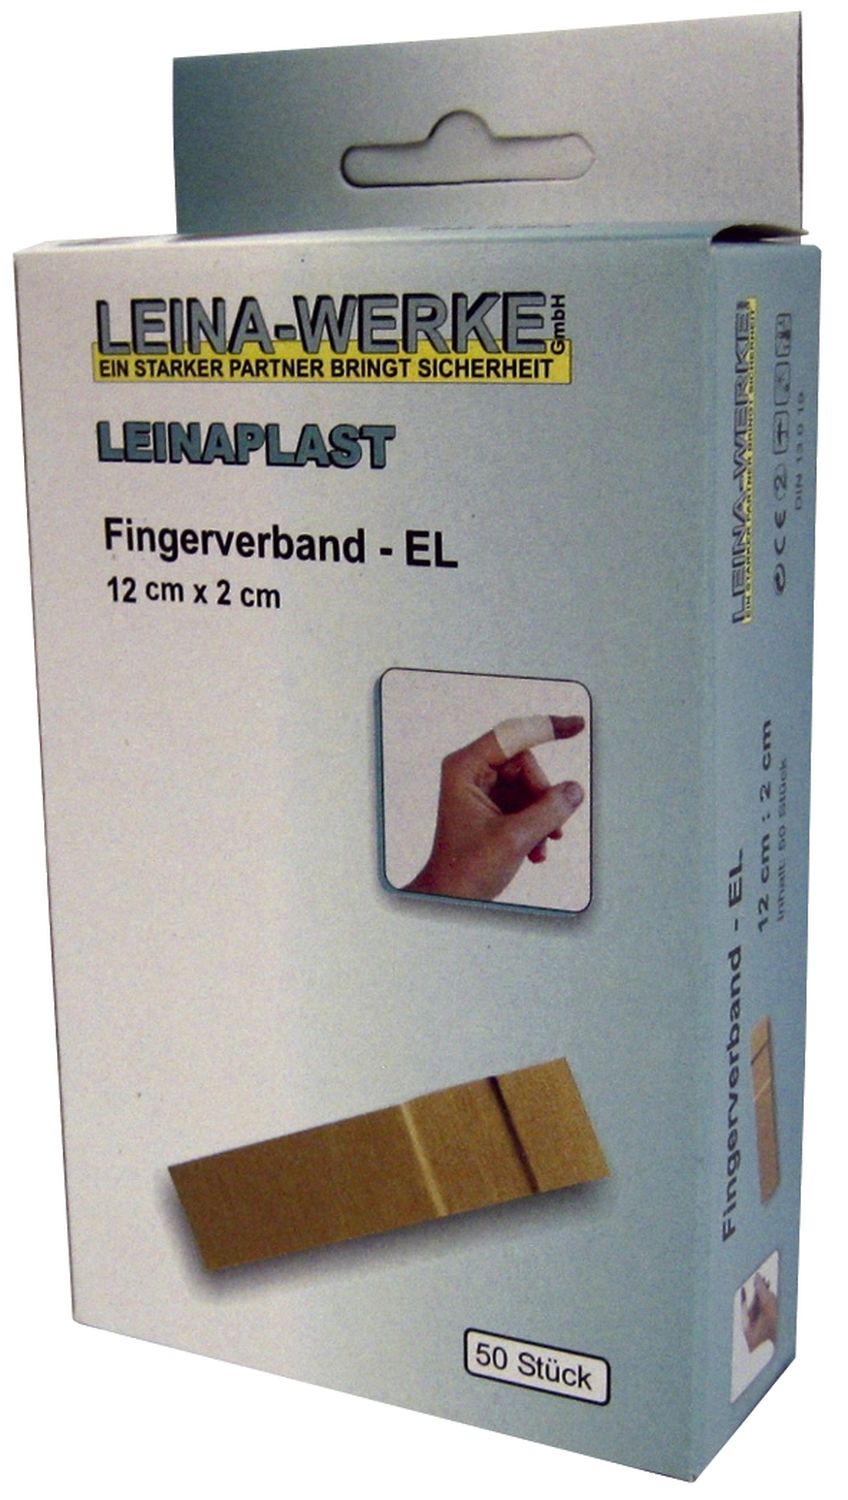 Fingerverband Leina-Werke 72000, 50 Stück, lose, 12 cm x 2 cm, elastisch